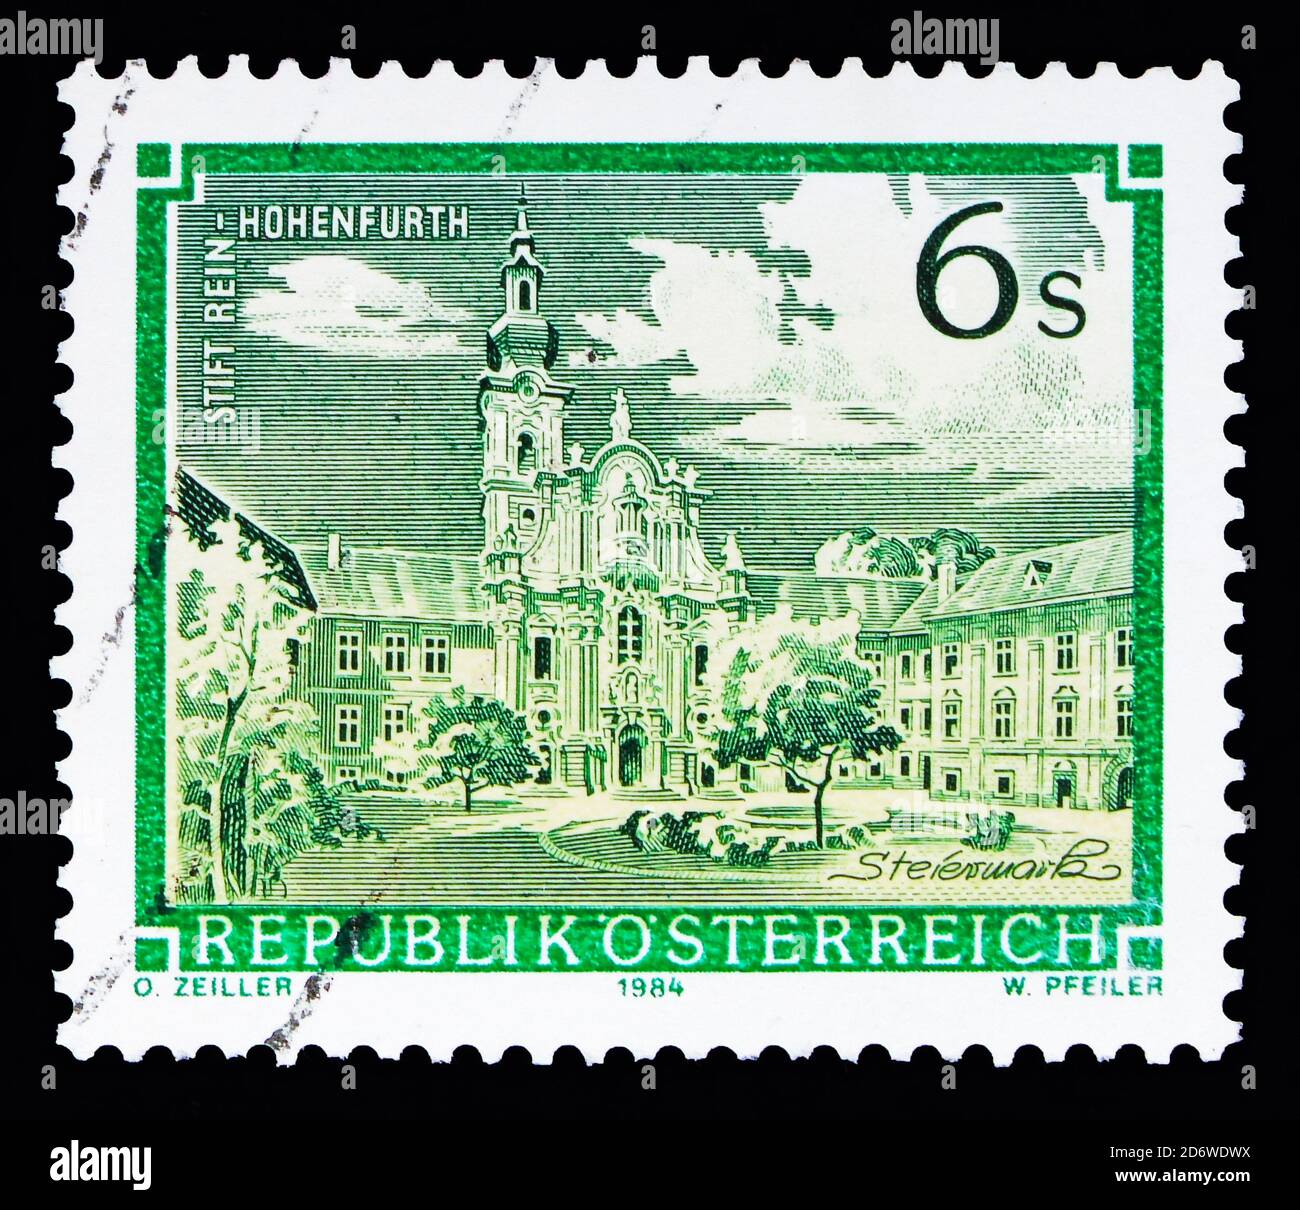 MOSKAU, RUSSLAND - 13. MAI 2018: Eine in Österreich gedruckte Briefmarke zeigt das Kloster rein-Hohenfurth, Klöster und Klöster, um 1984 Stockfoto